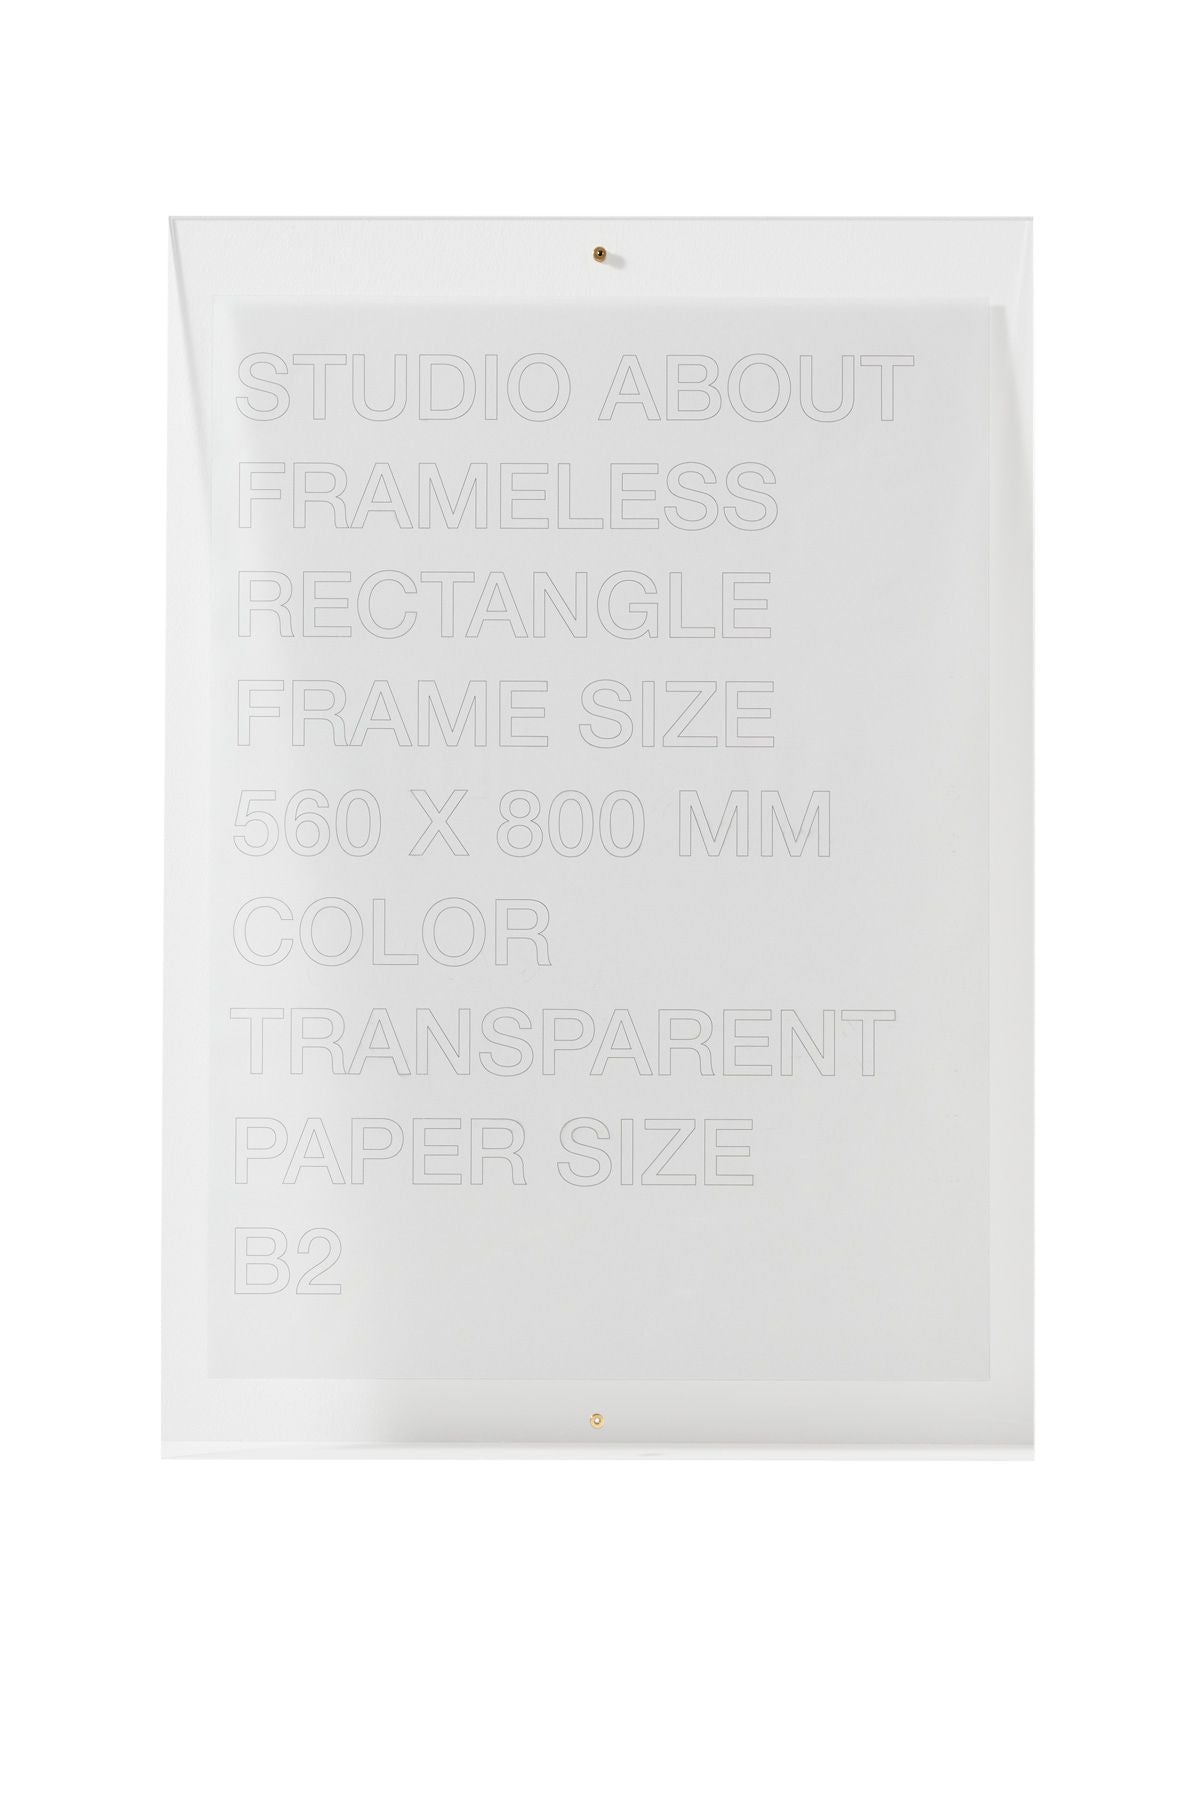 Studio sur le cadre sans cadre B2 rectangle, transparent